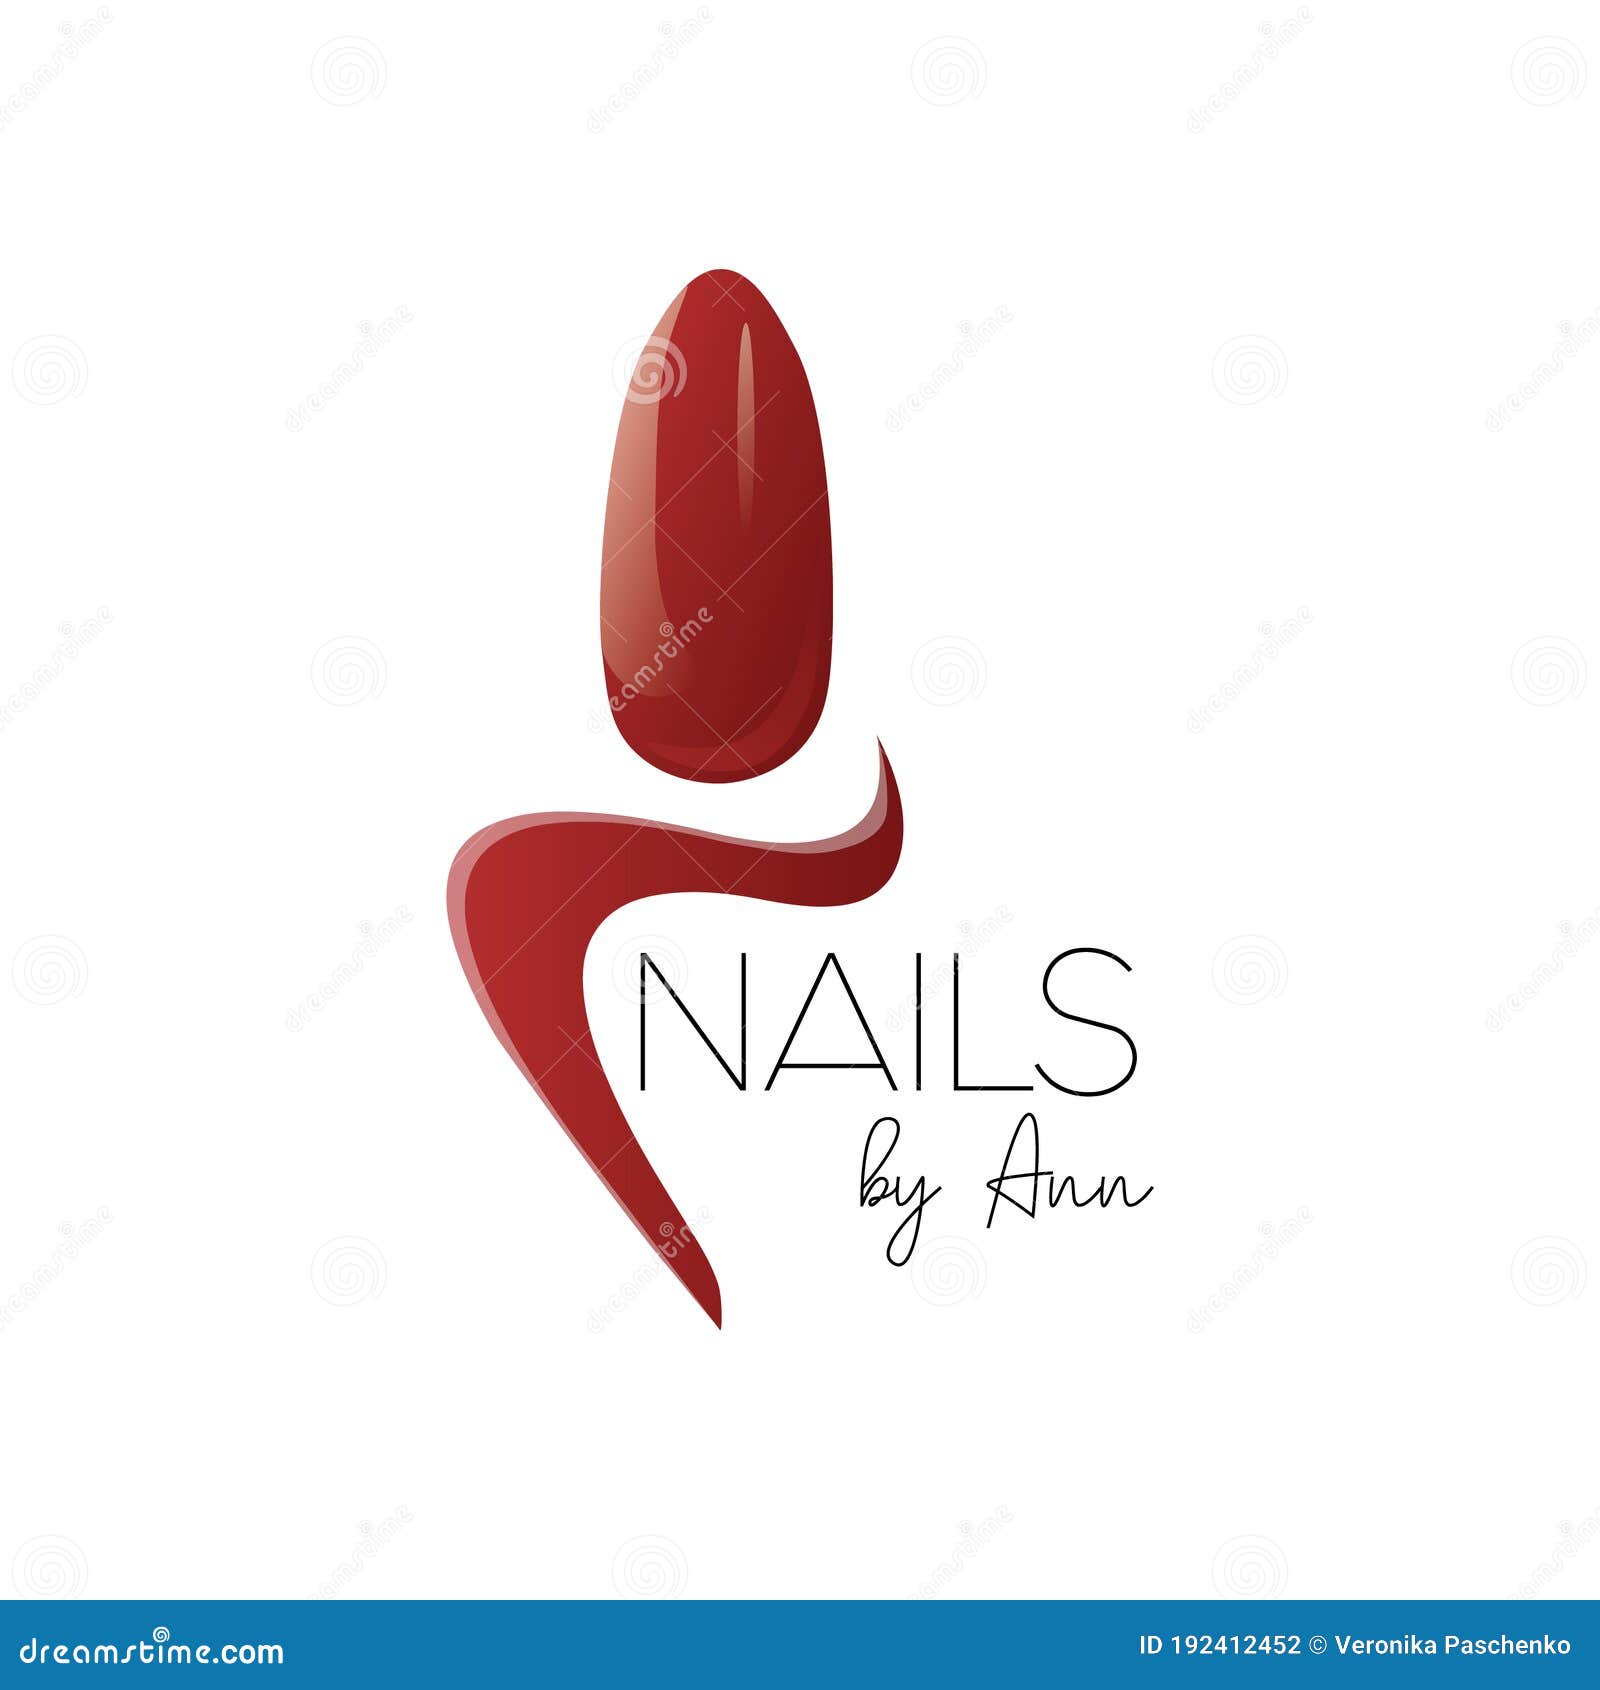 nail artist logo  with red nail polish